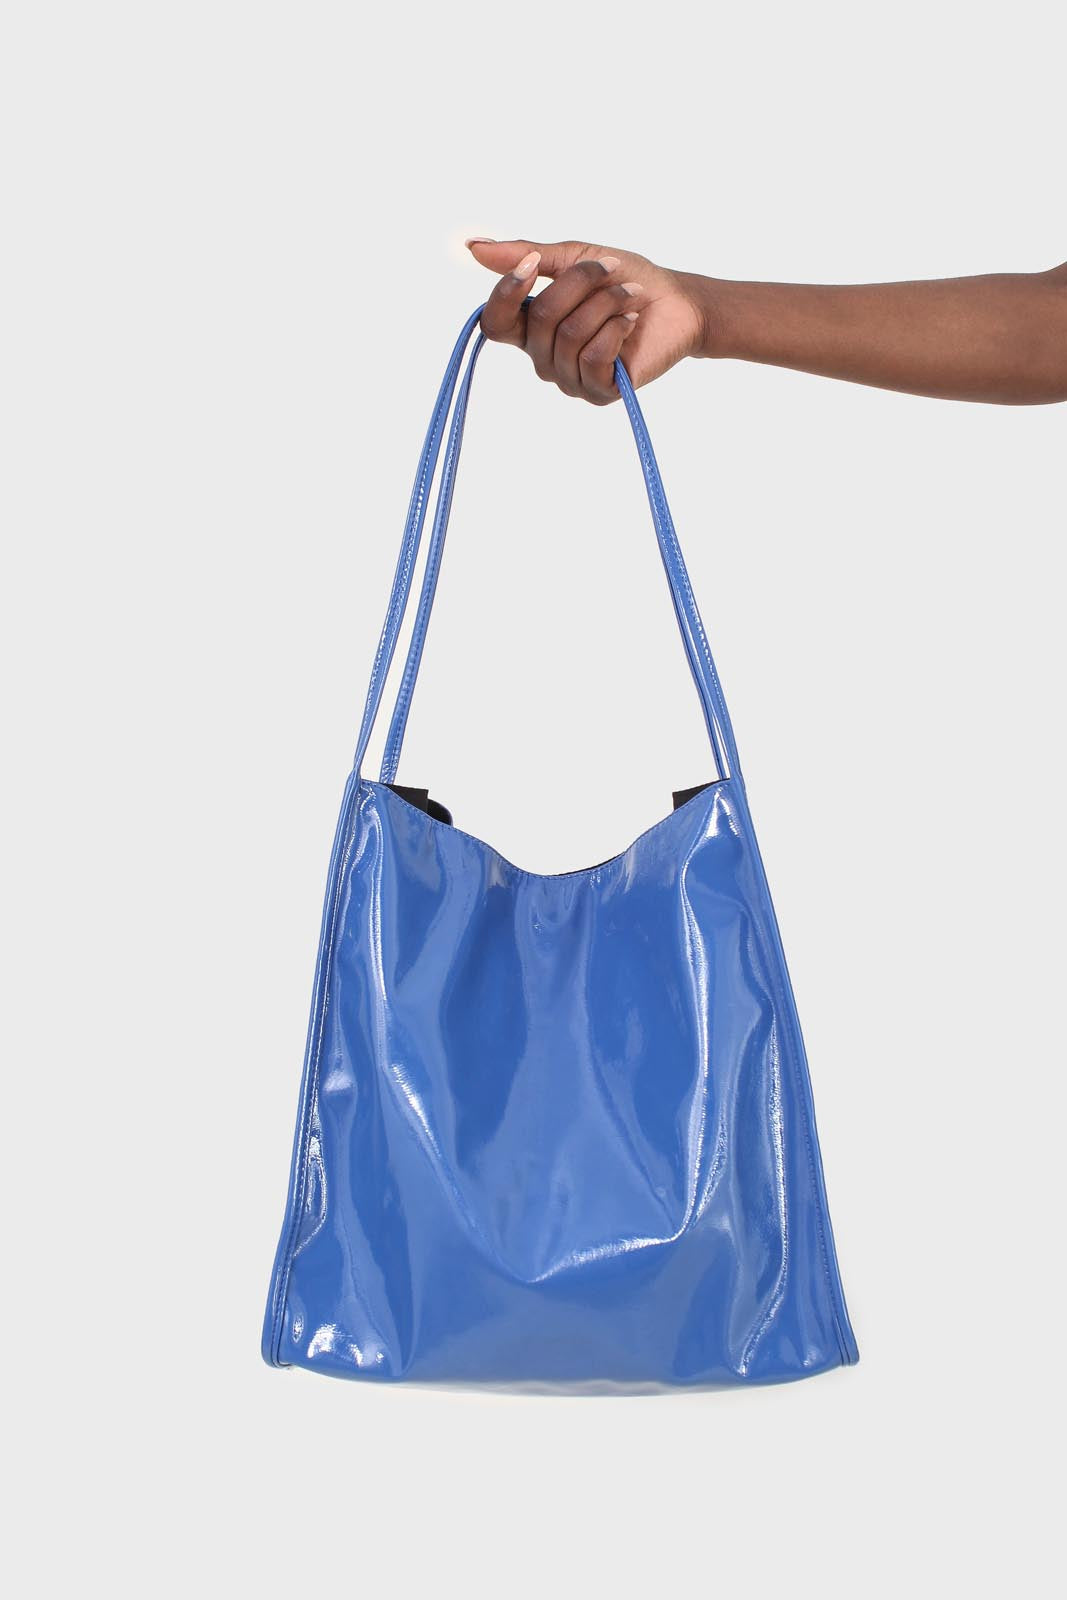 Bright blue high shine PVC tote bag